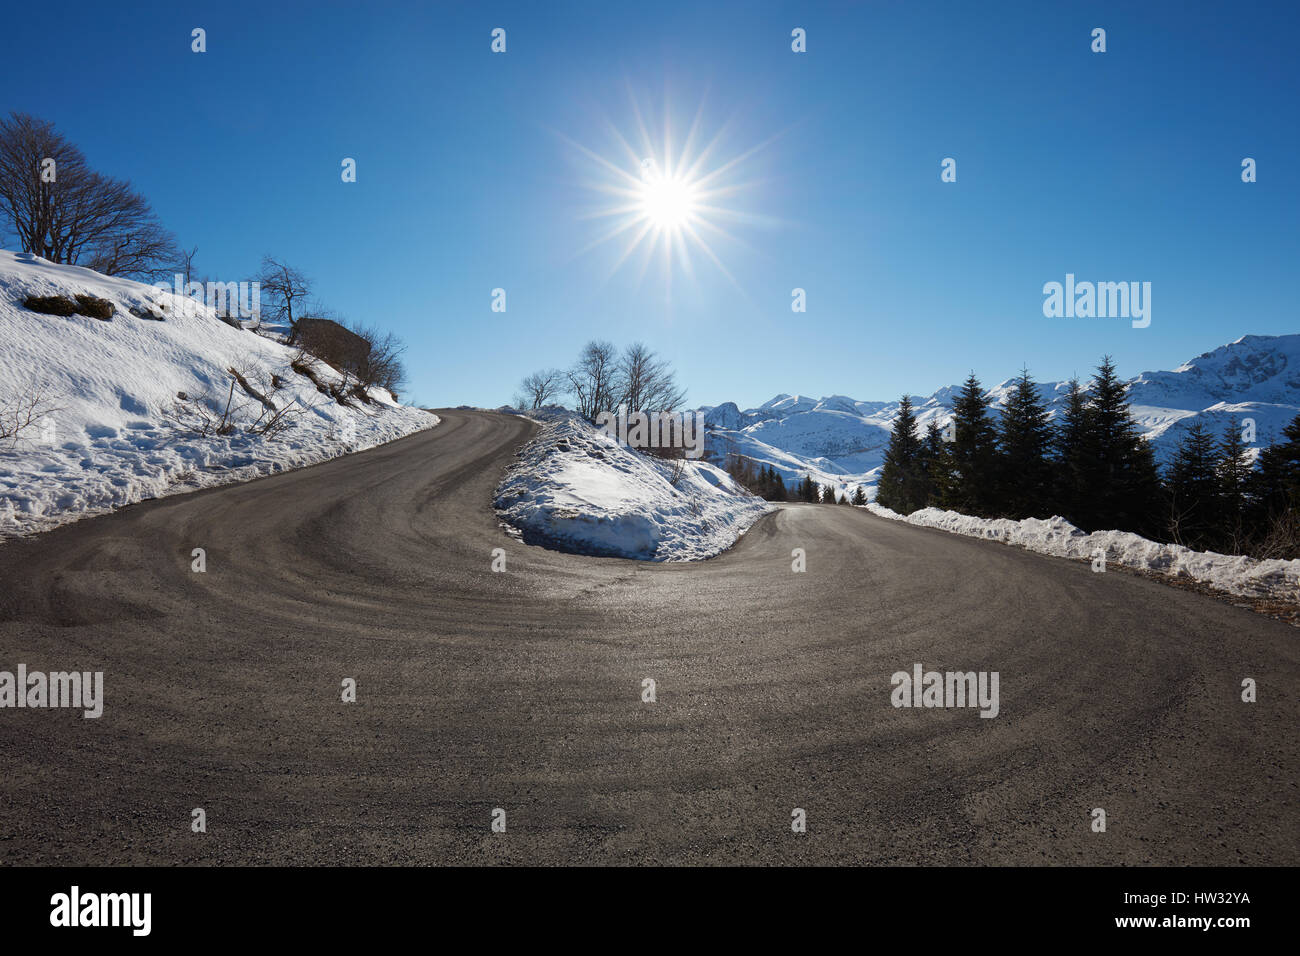 Route de montagne vide grande courbe sur Alpes de neige sur les côtés, ciel bleu et soleil Banque D'Images